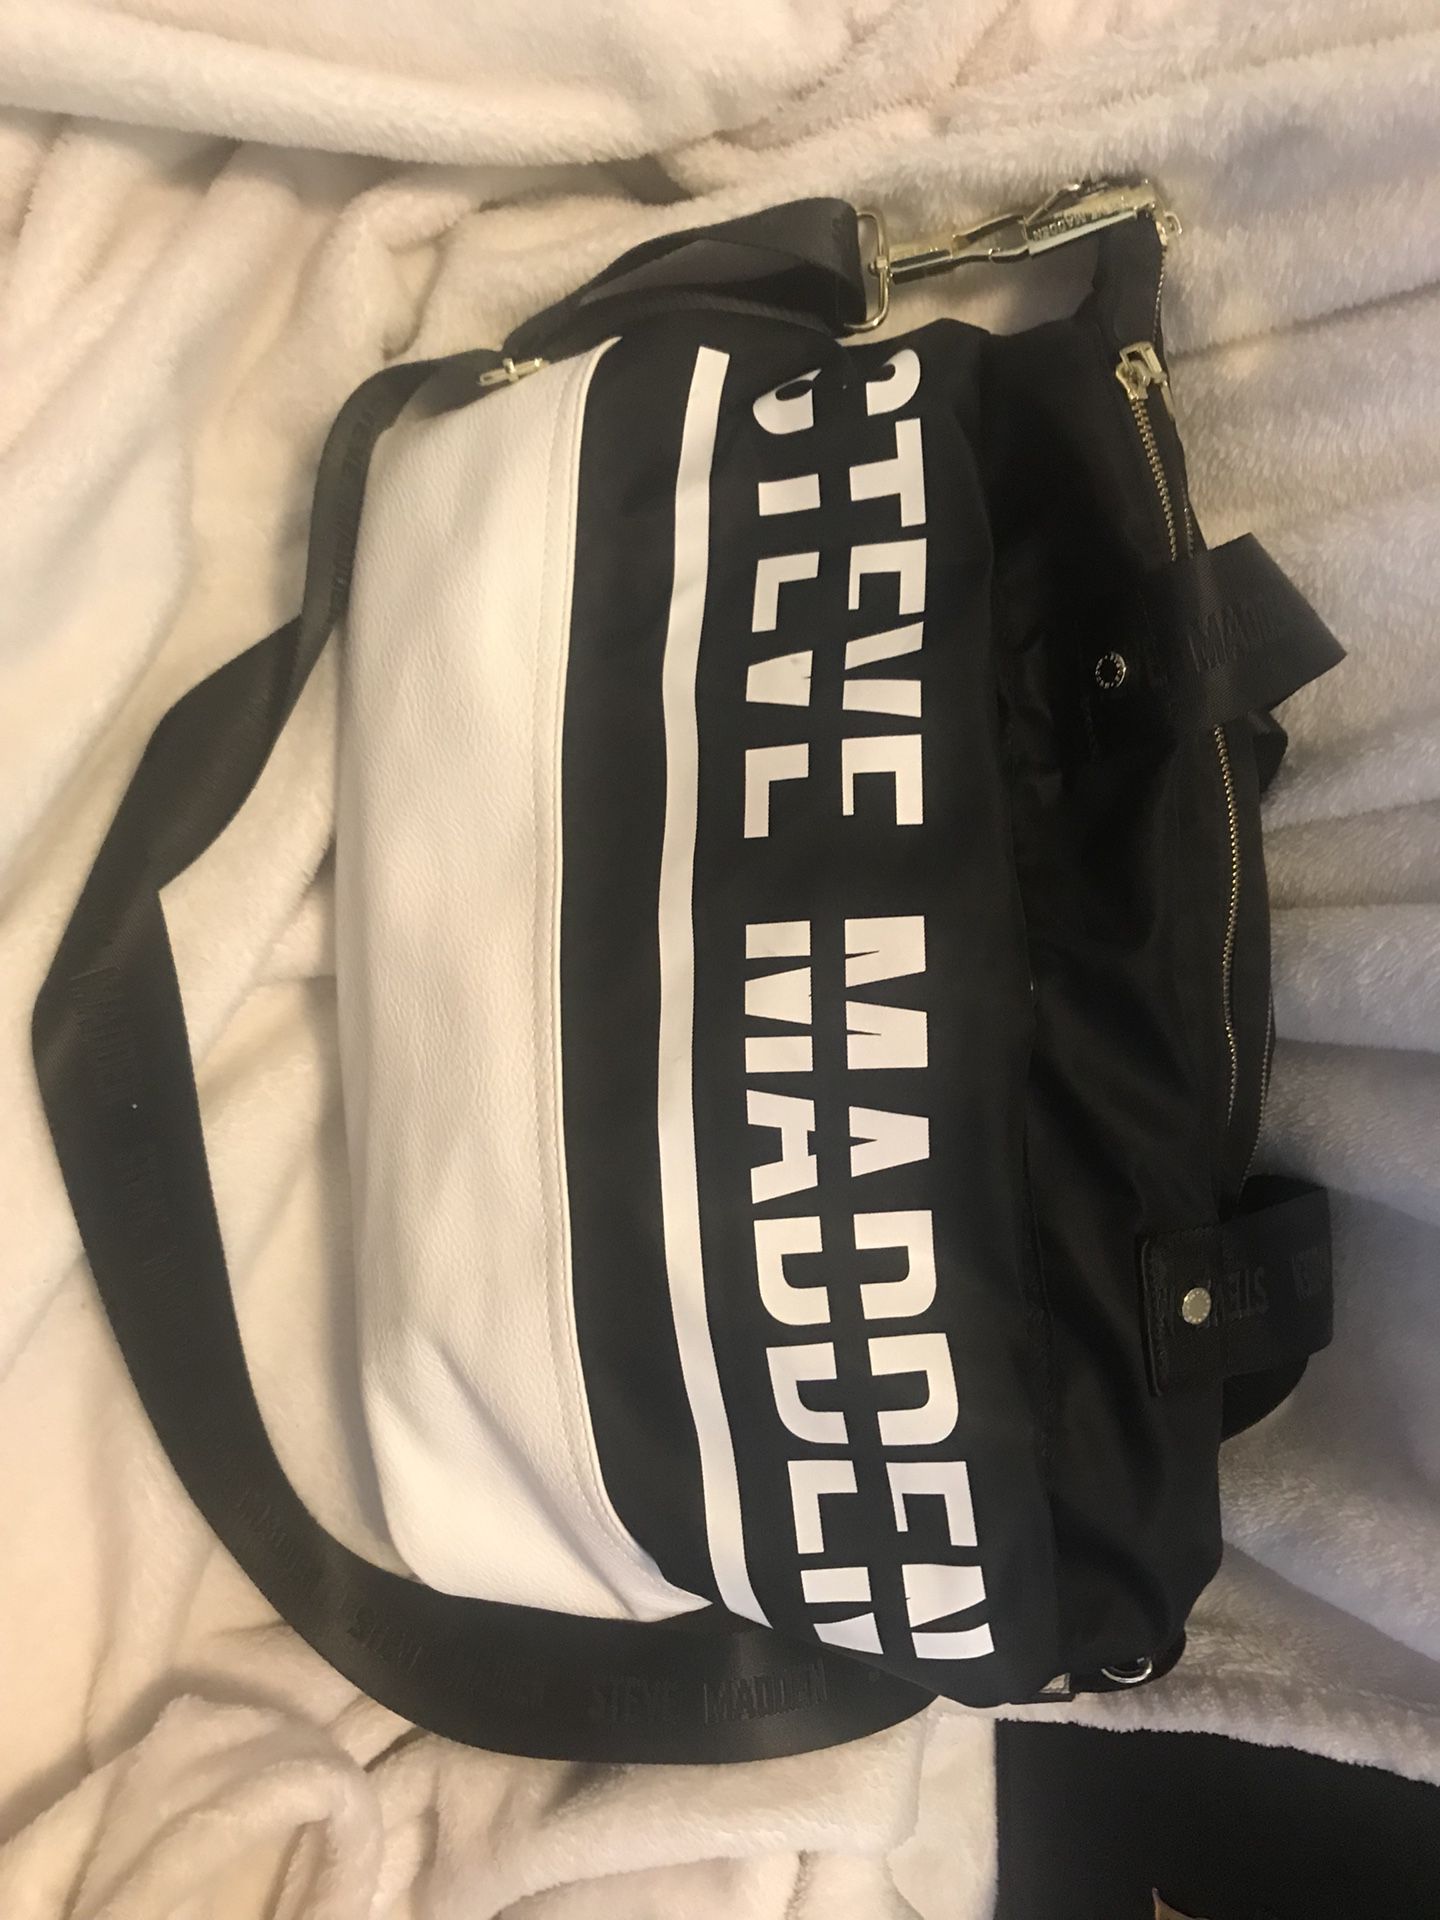 Steven Madden Duffle Bag for Sale in Glendale, AZ - OfferUp